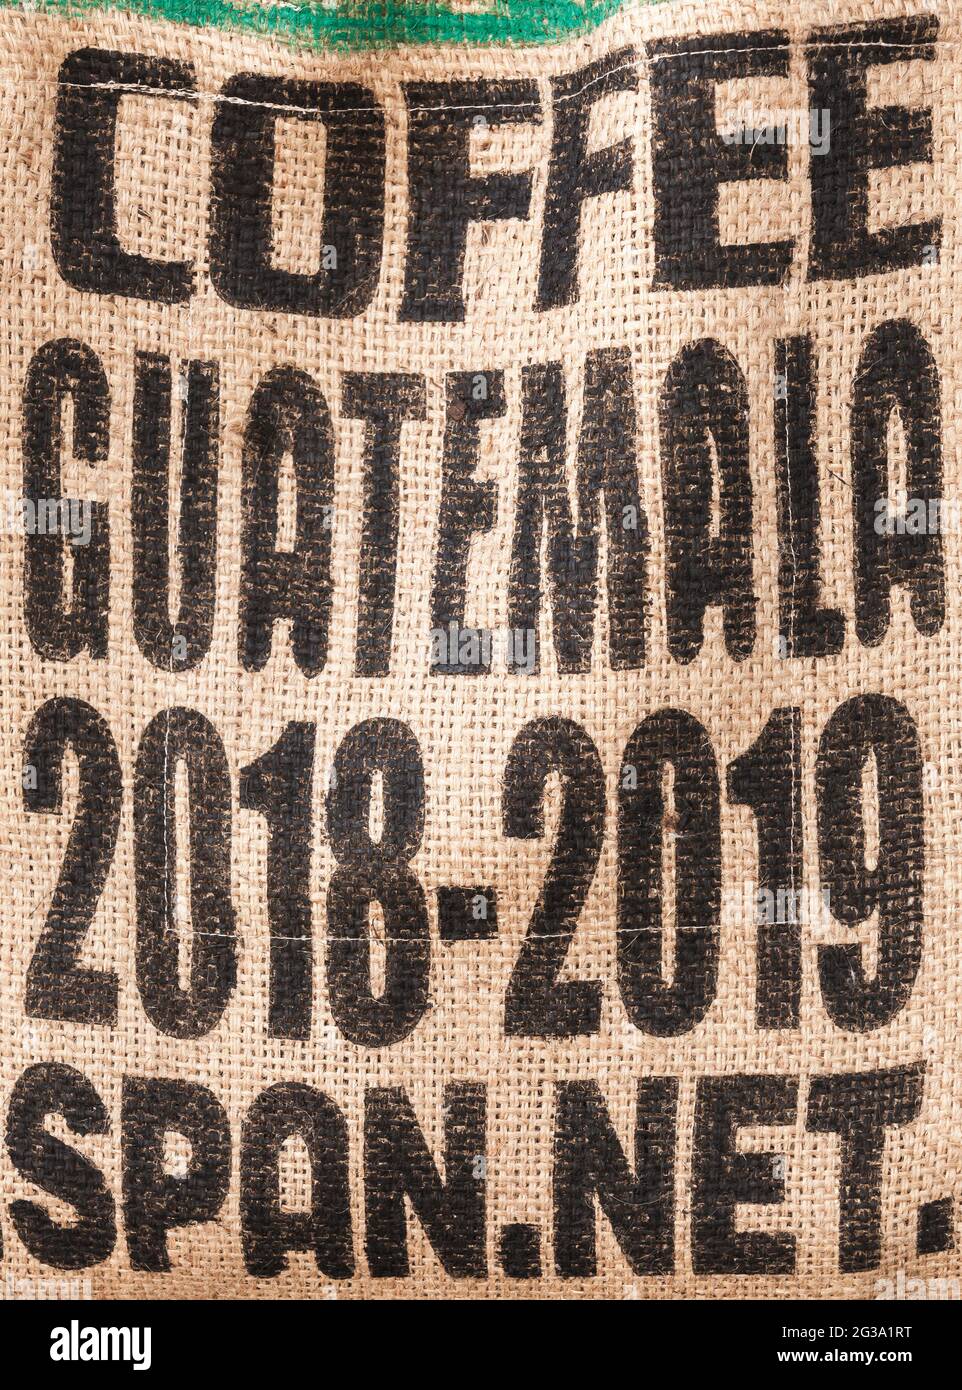 Jute-Tasche mit standardmäßigem schwarzen Markierungstext für guatemaltekischen Kaffee der Ernte 2018-2019, Hintergrundbild Stockfoto